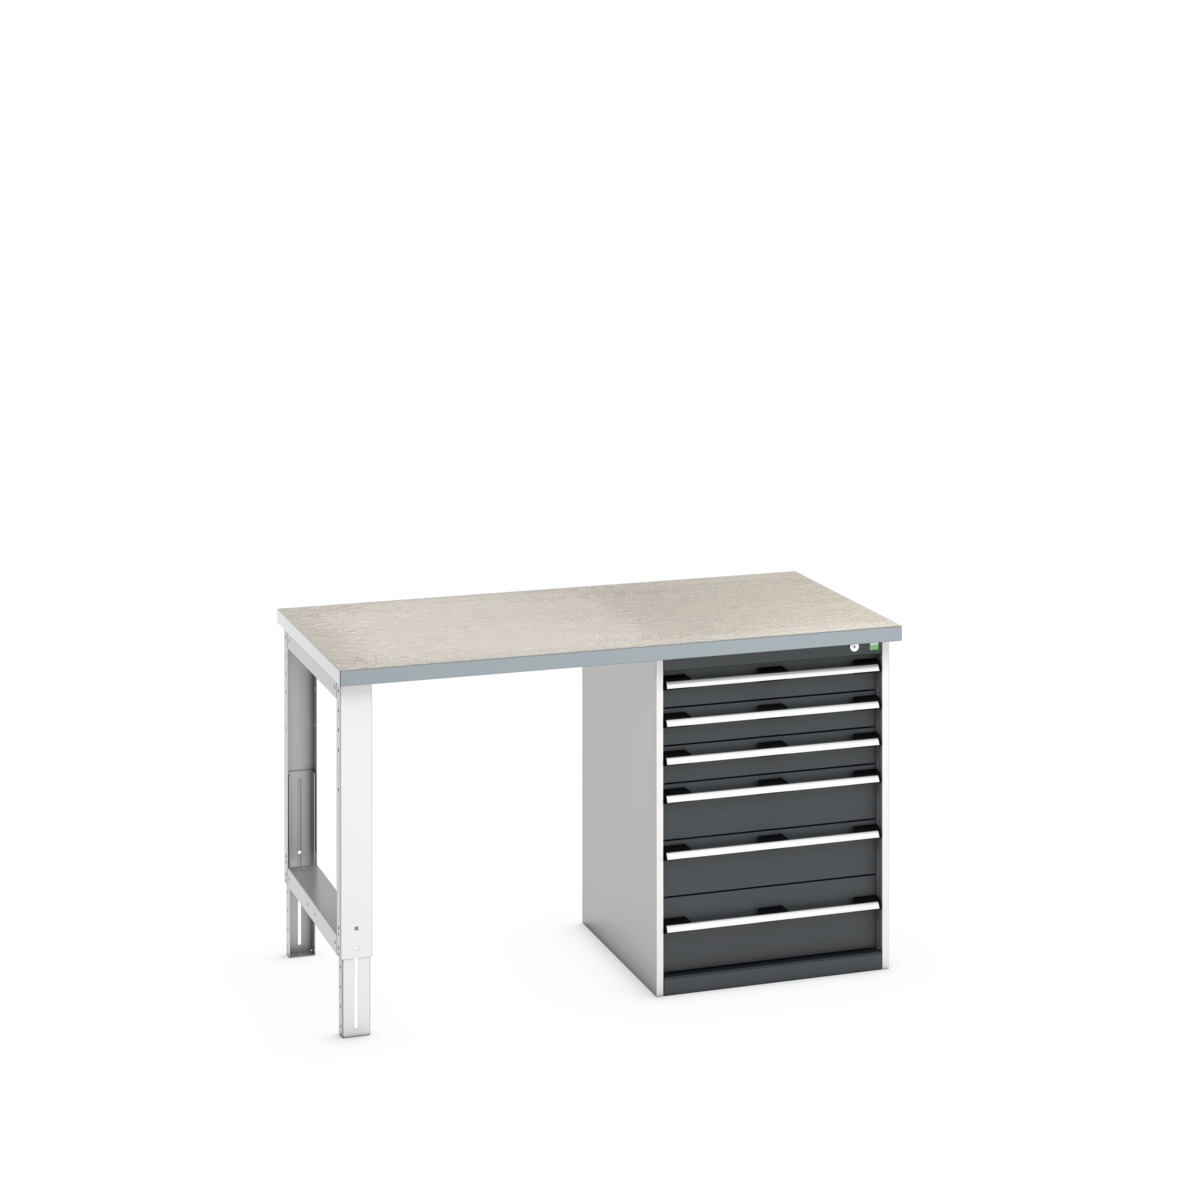 41004118.19V - cubio pedestal bench (lino)